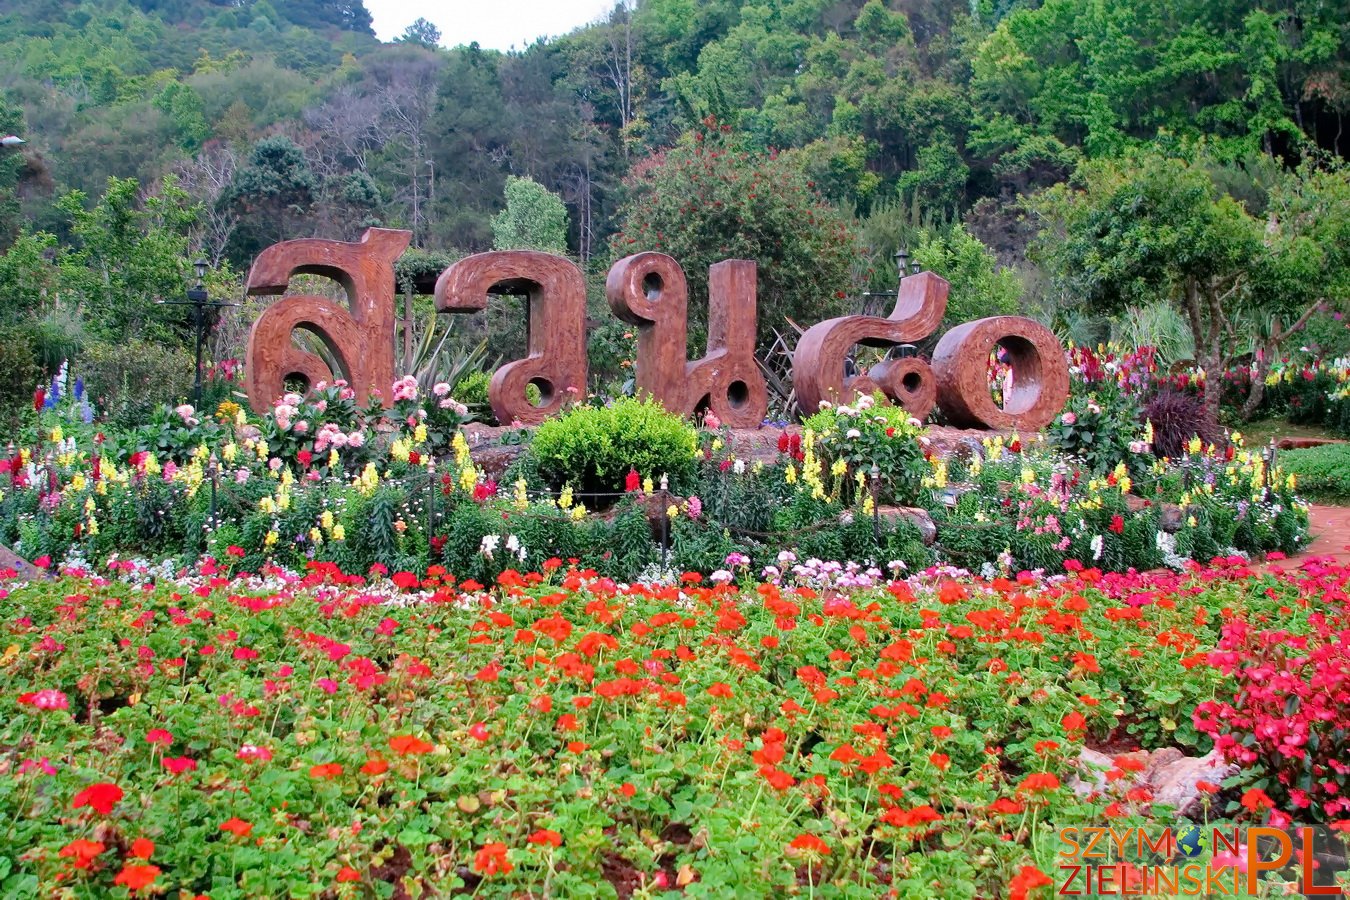 Doi Ang Khang Royal Agricultural Station, Chiang Mai province, Thailand